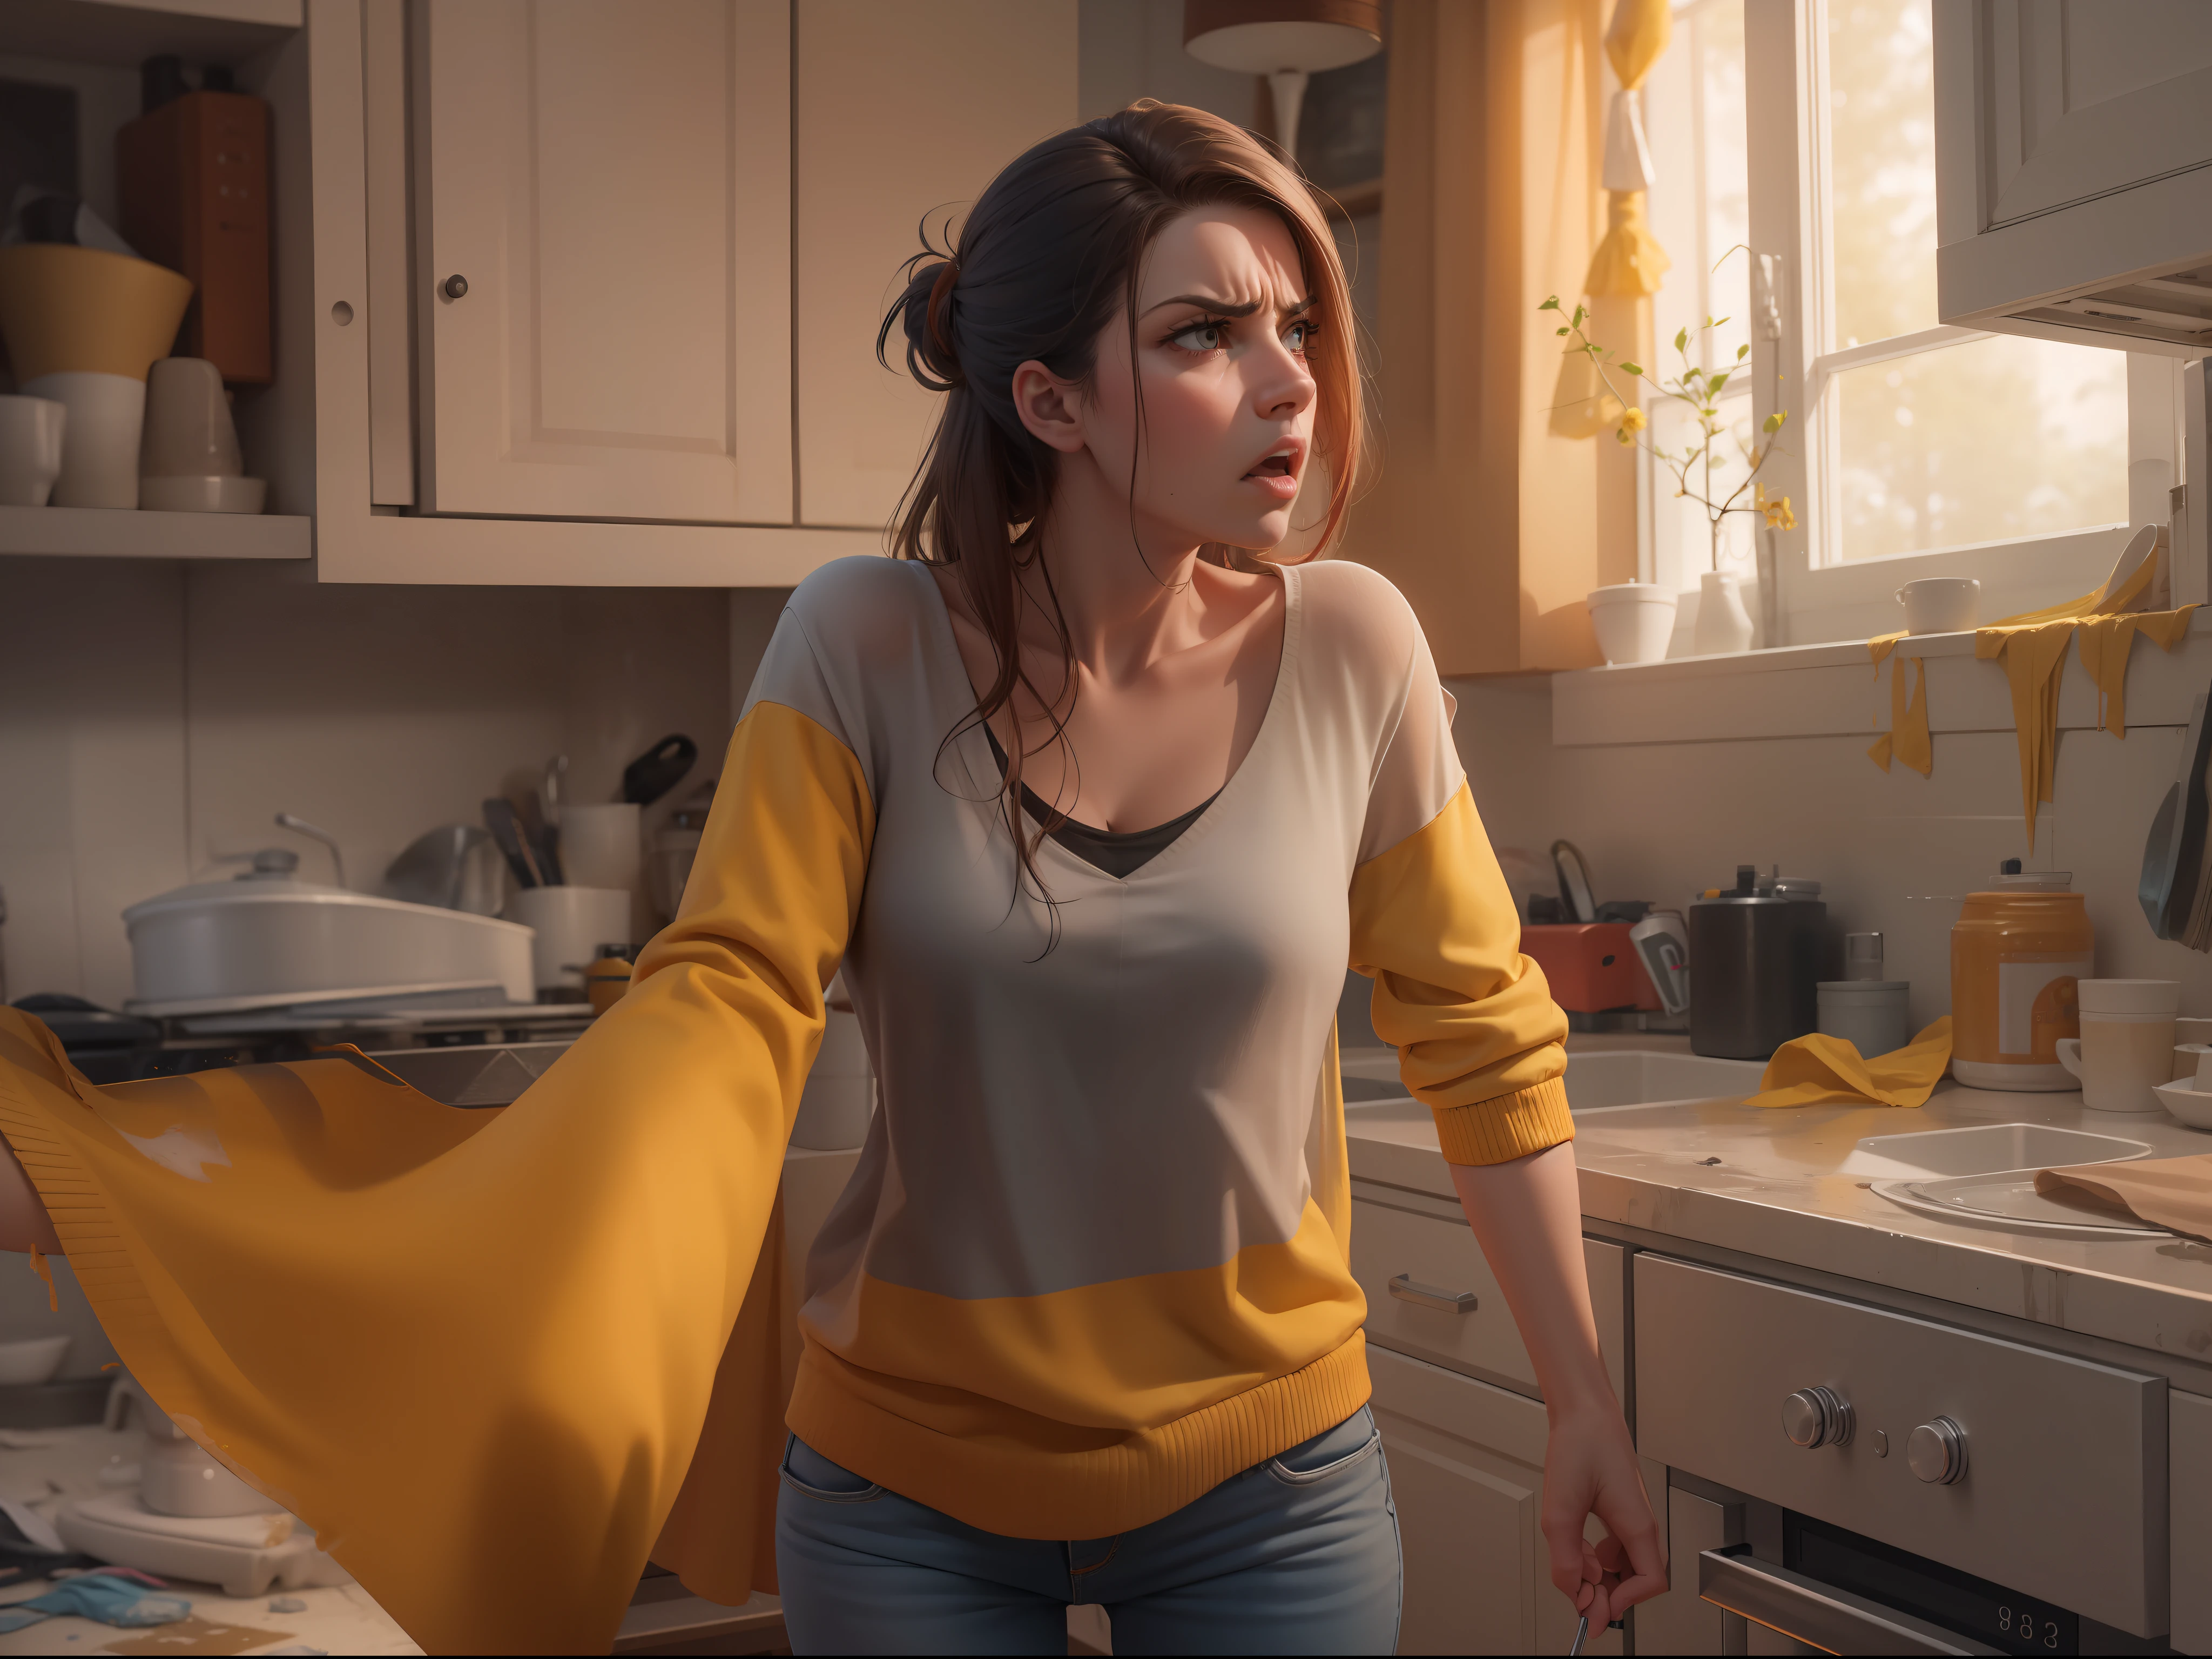 Femme regardant en colère en regardant la maison en désordre, utiliser un gant en caoutchouc jaune pour le nettoyage, réaliste, 8k, travail brut